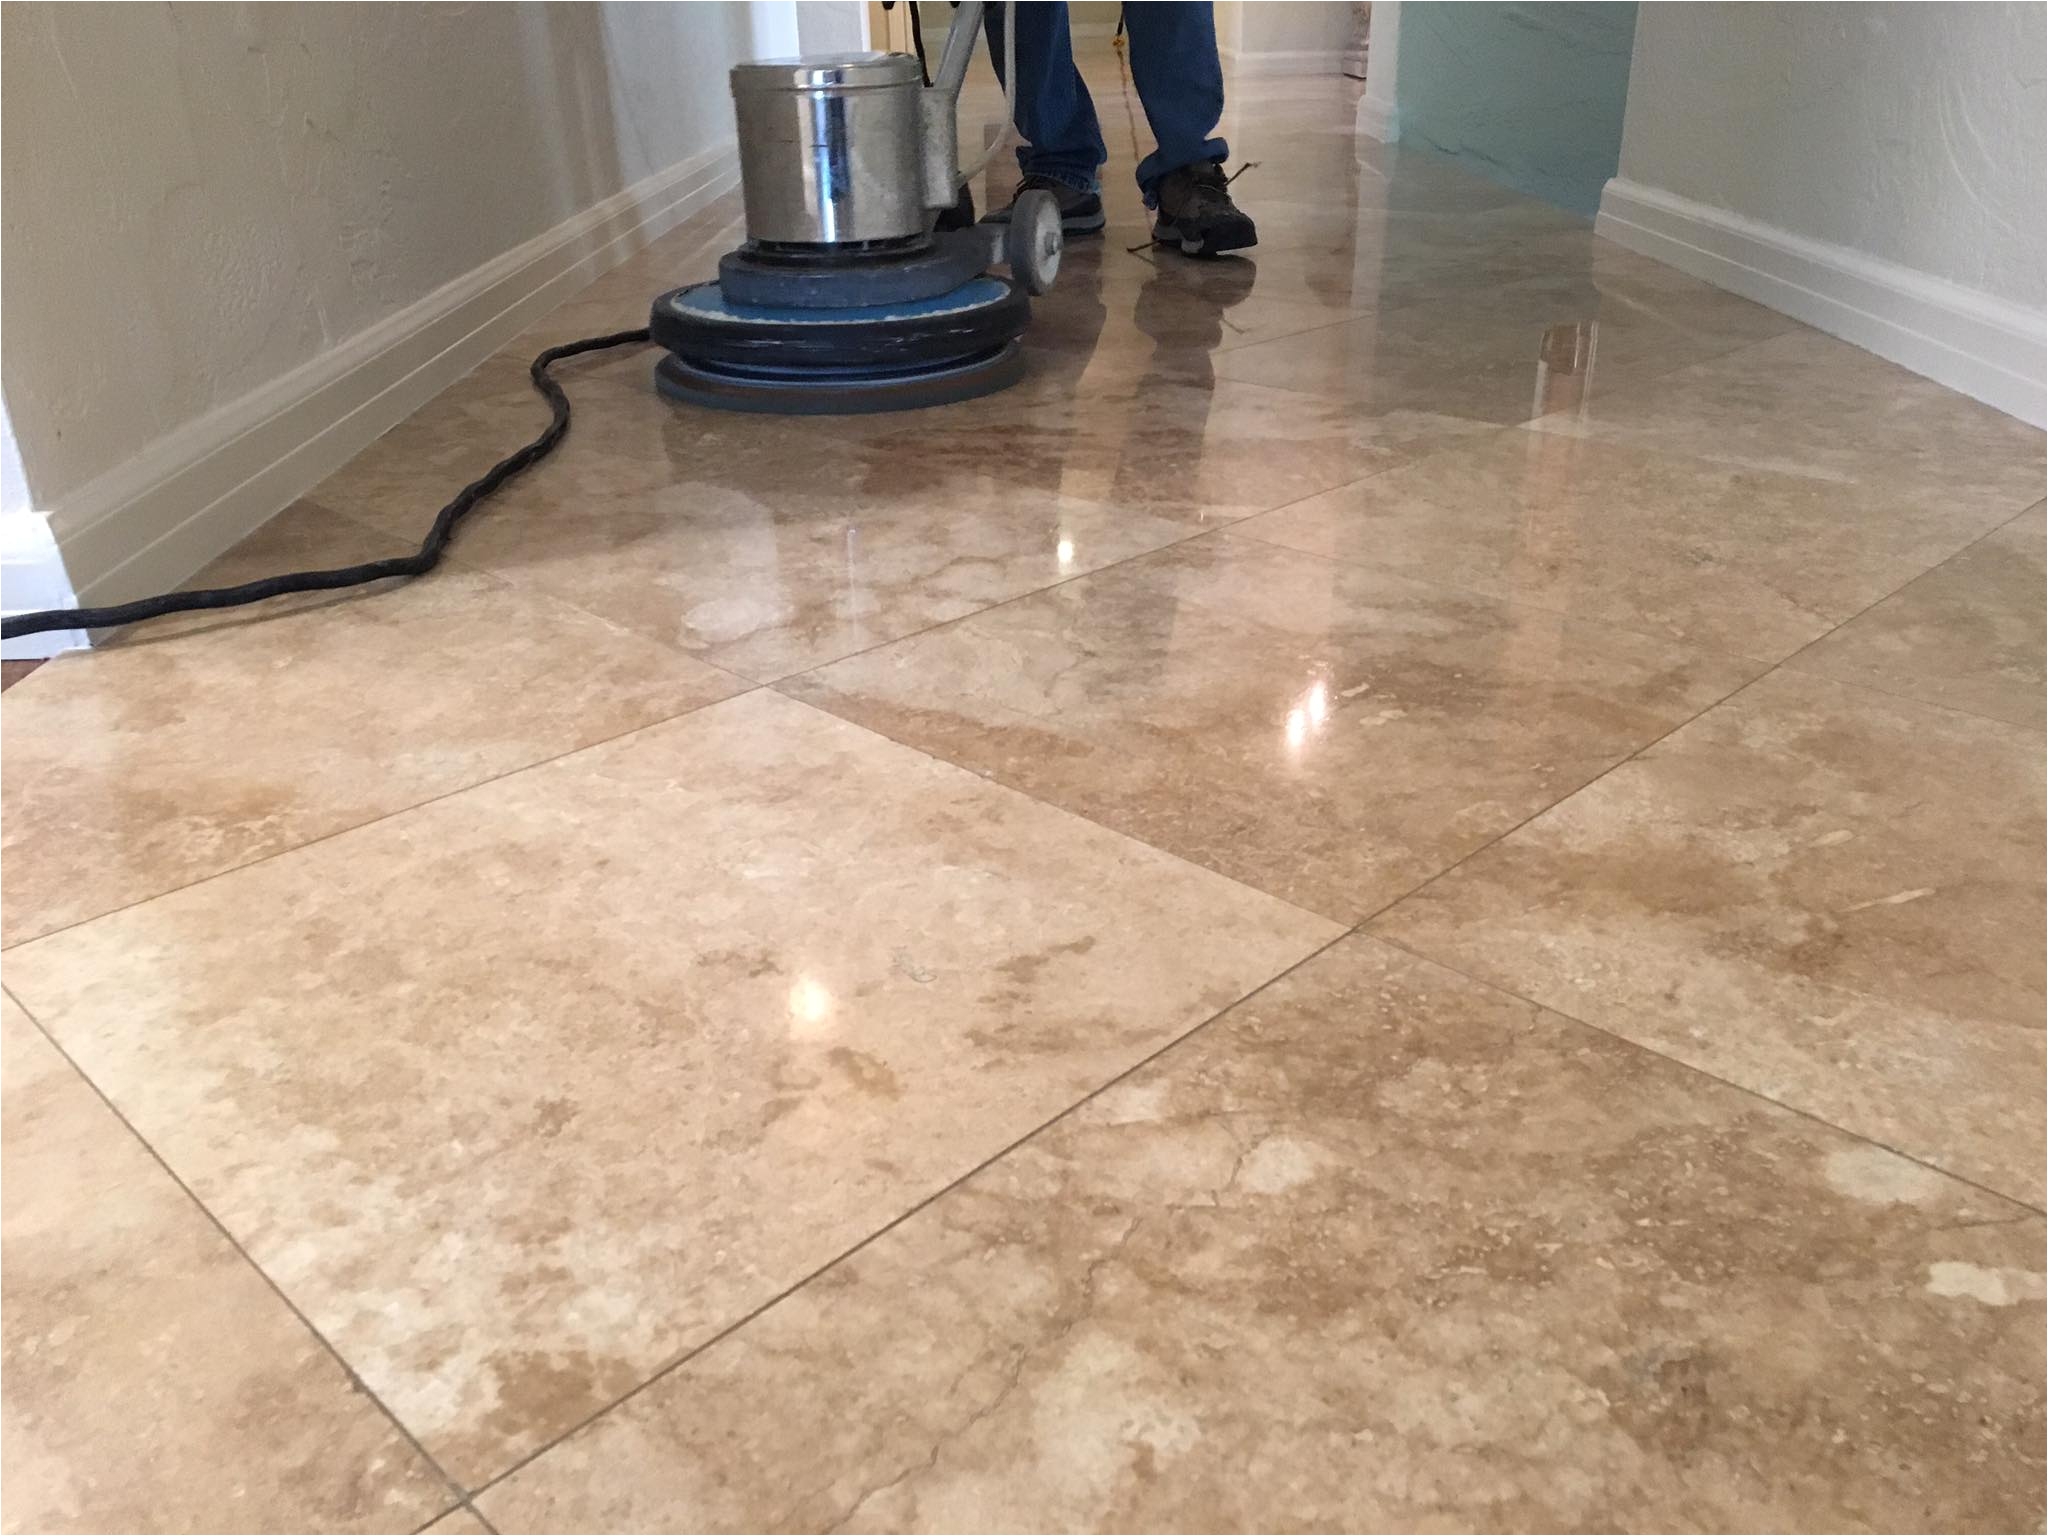 Tile Flooring Longview Tx Indoor Floor Sealing Professional Floor Cleaning Restoration